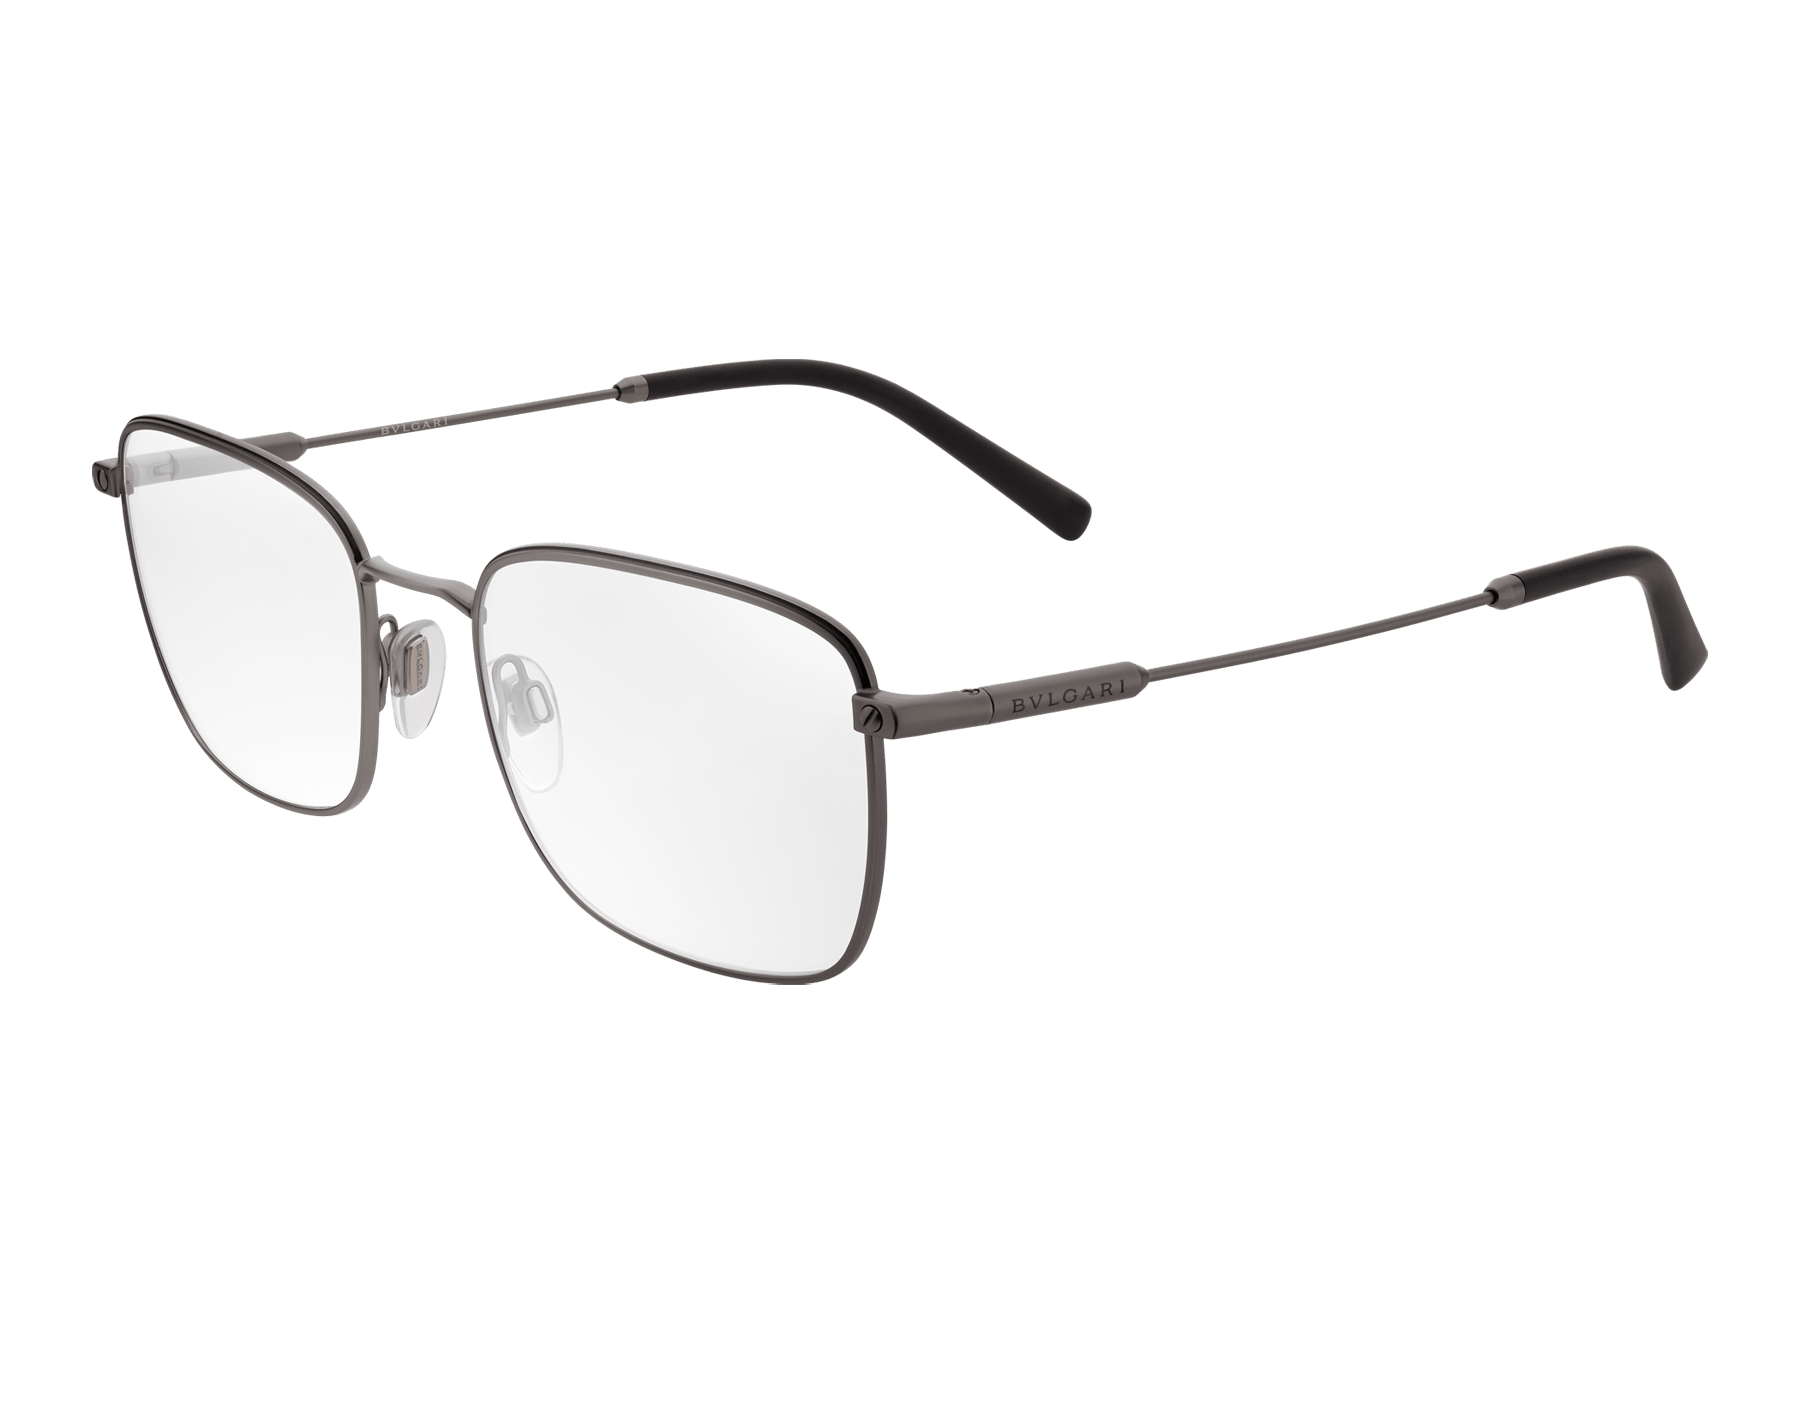 bvlgari optical glasses